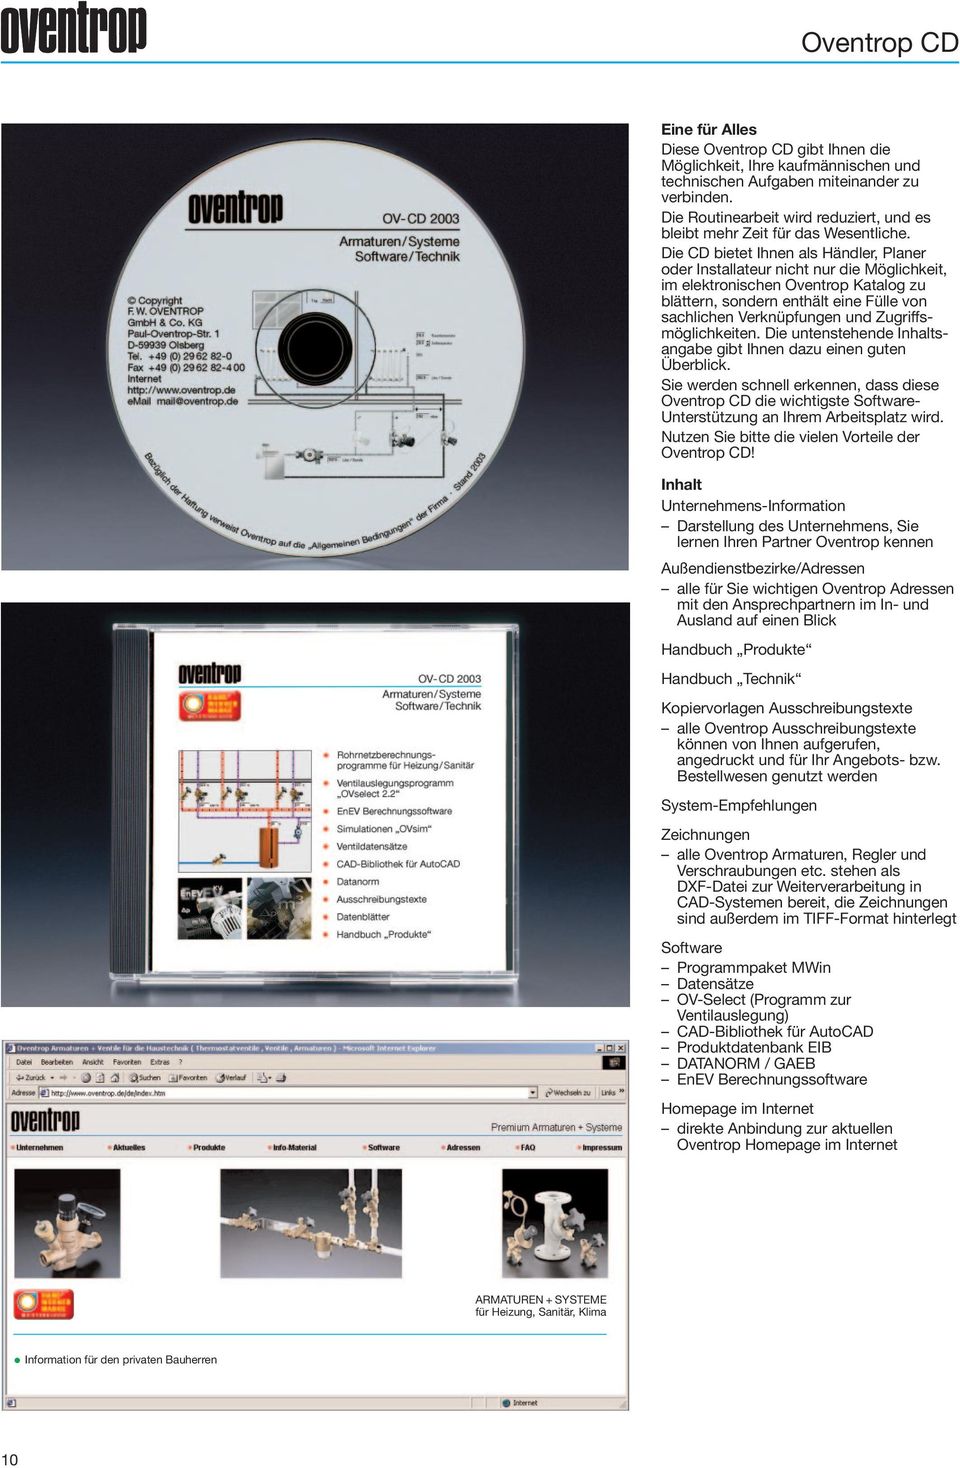 Die CD bietet Ihnen als Händler, Planer oder Installateur nicht nur die Möglichkeit, im elektronischen Oventrop Katalog zu blättern, sondern enthält eine Fülle von sachlichen Verknüpfungen und